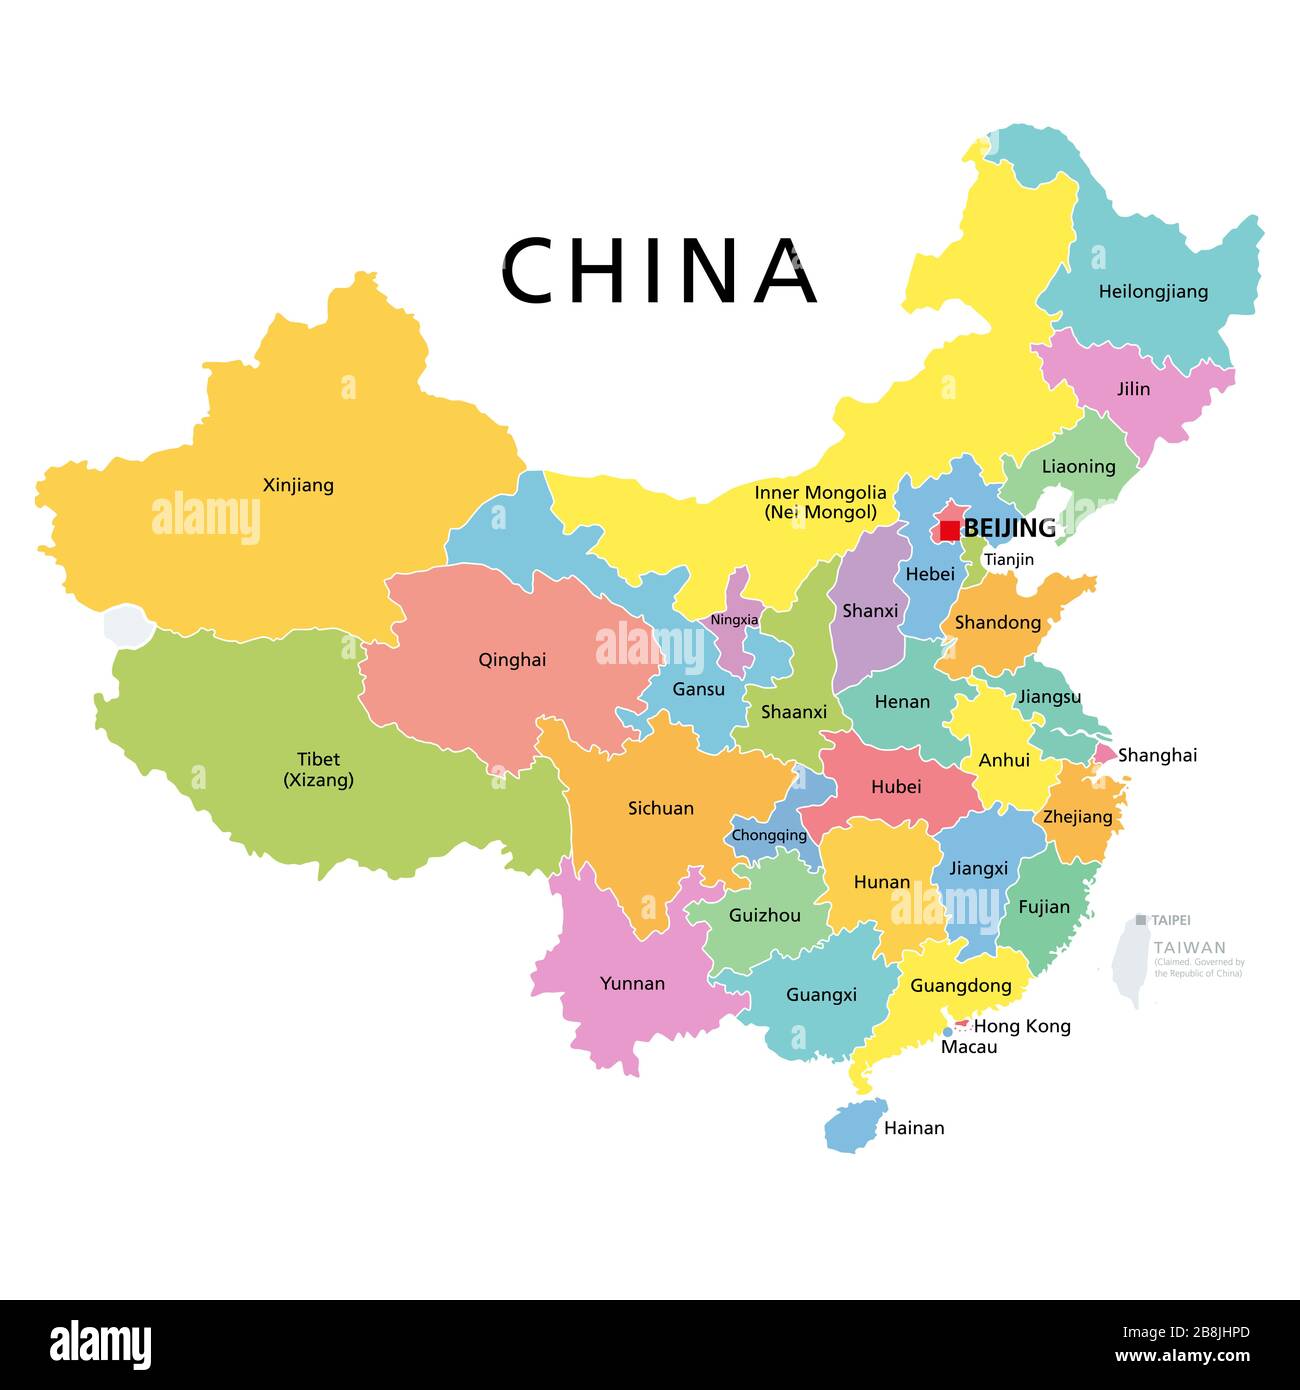 China, politische Karte mit bunten Provinzen. VR China, Volksrepublik China mit Hauptstadt Peking, Grenzen und Verwaltungseinteilungen. Englisch. Stockfoto